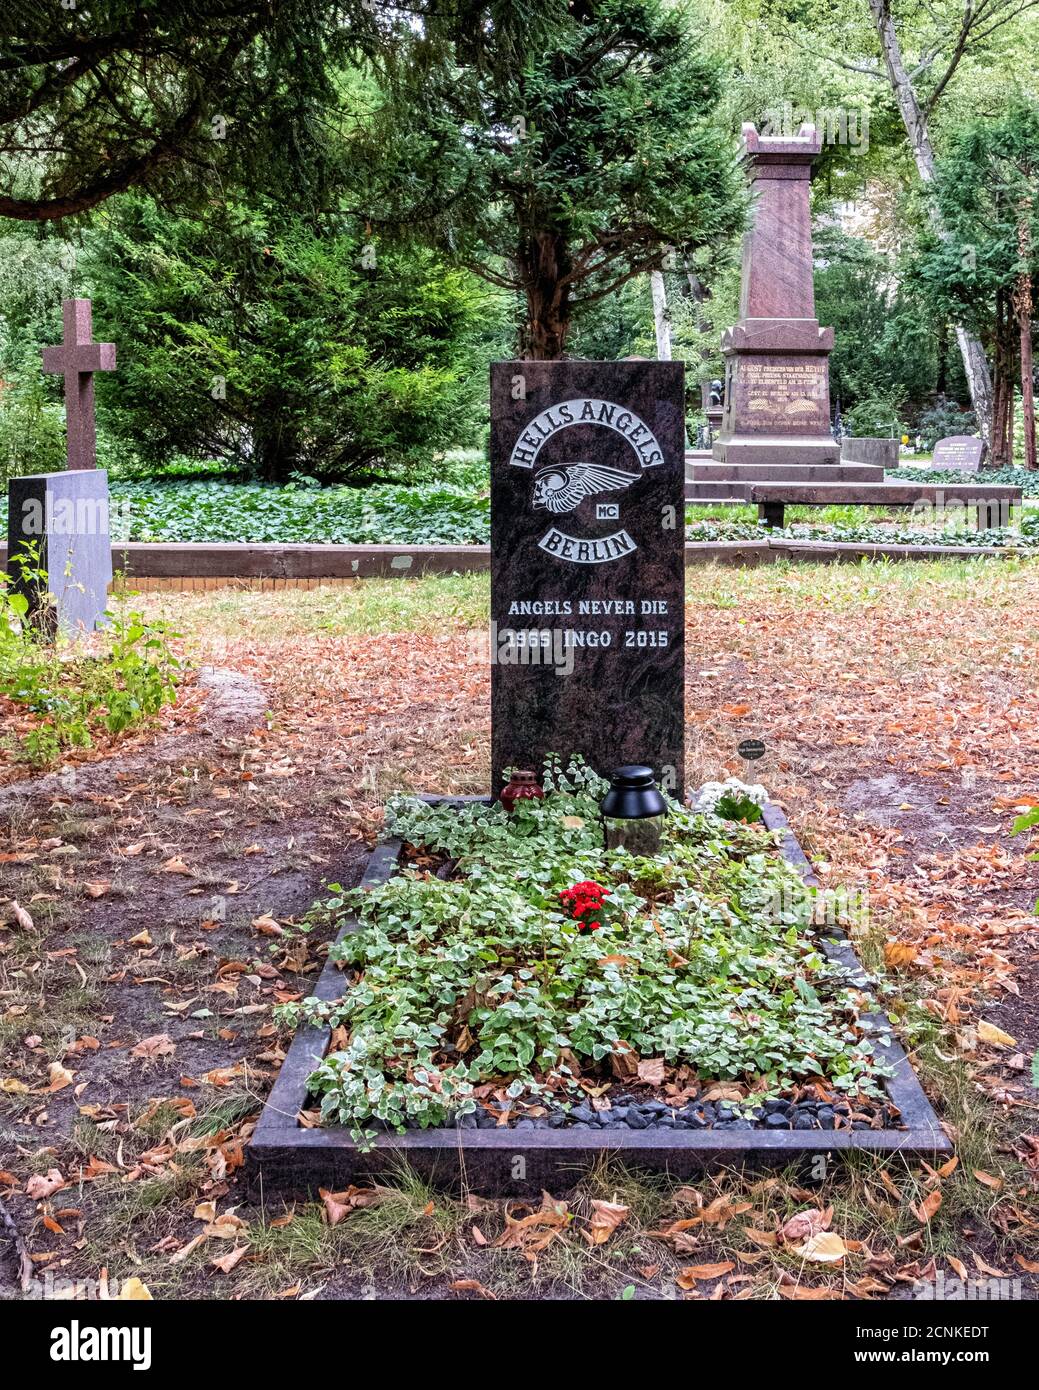 Alter St. Matthäus Kirchhof .Alter Matthäus-Friedhof,Schöneberg-Berlin. Grab eines Höllenenenengels, Ingo 1965-2015 Stockfoto